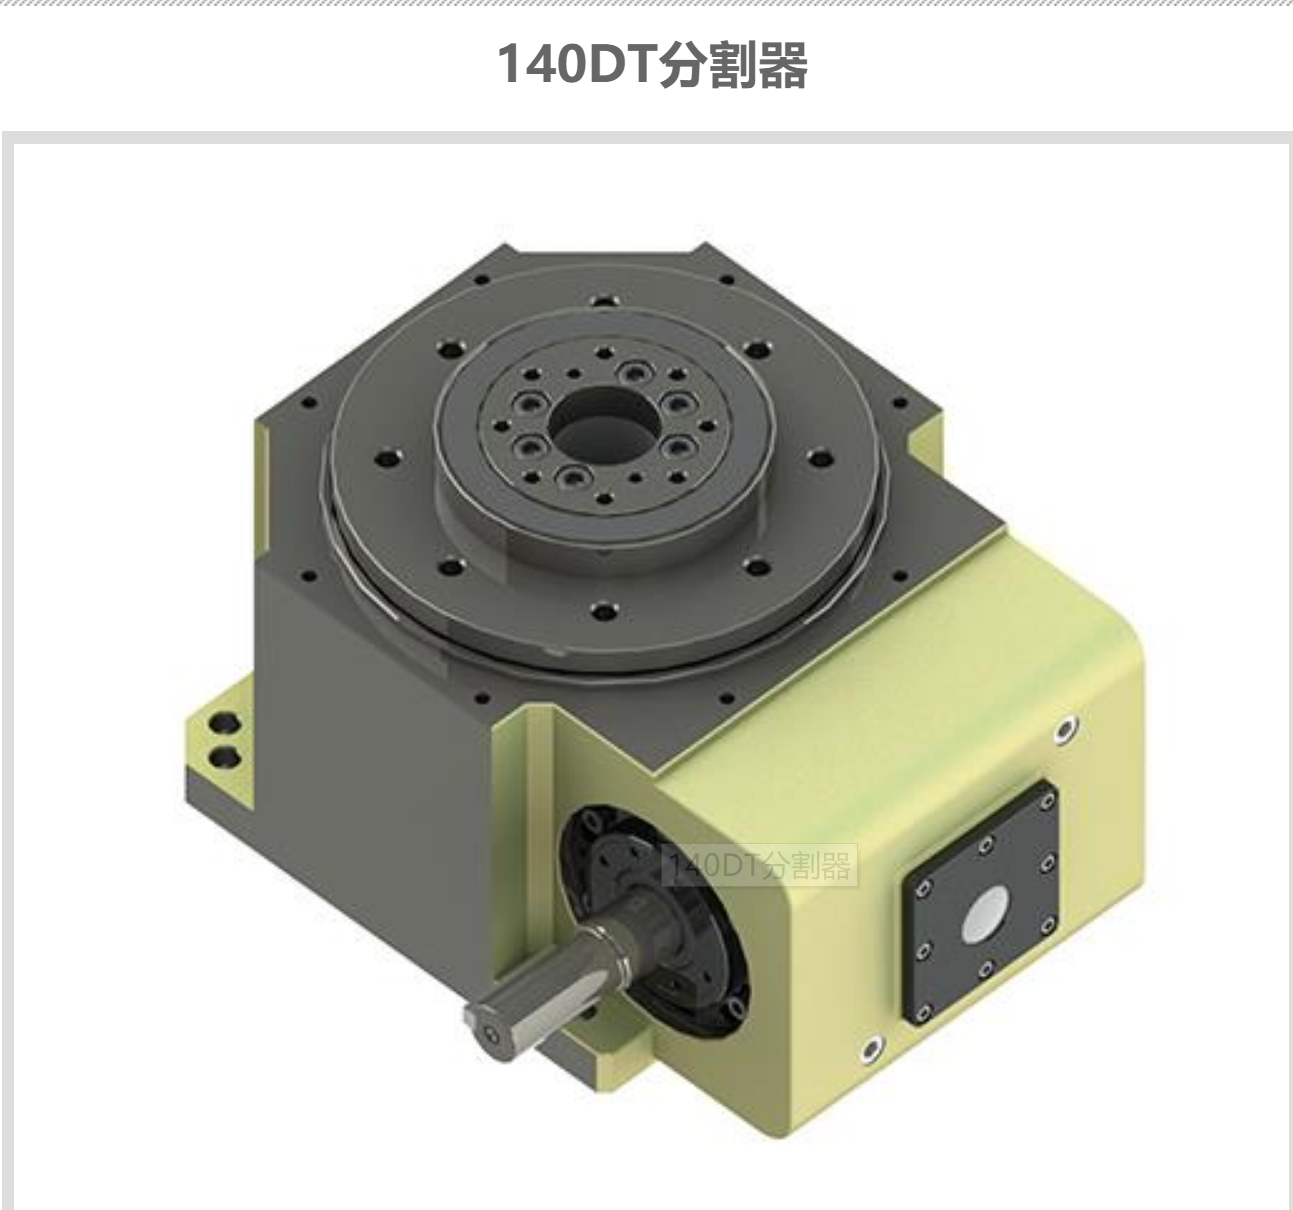 深圳组装机非标140DT凸轮分割器定制费用 盘式组装机110dt精密分割器供货商